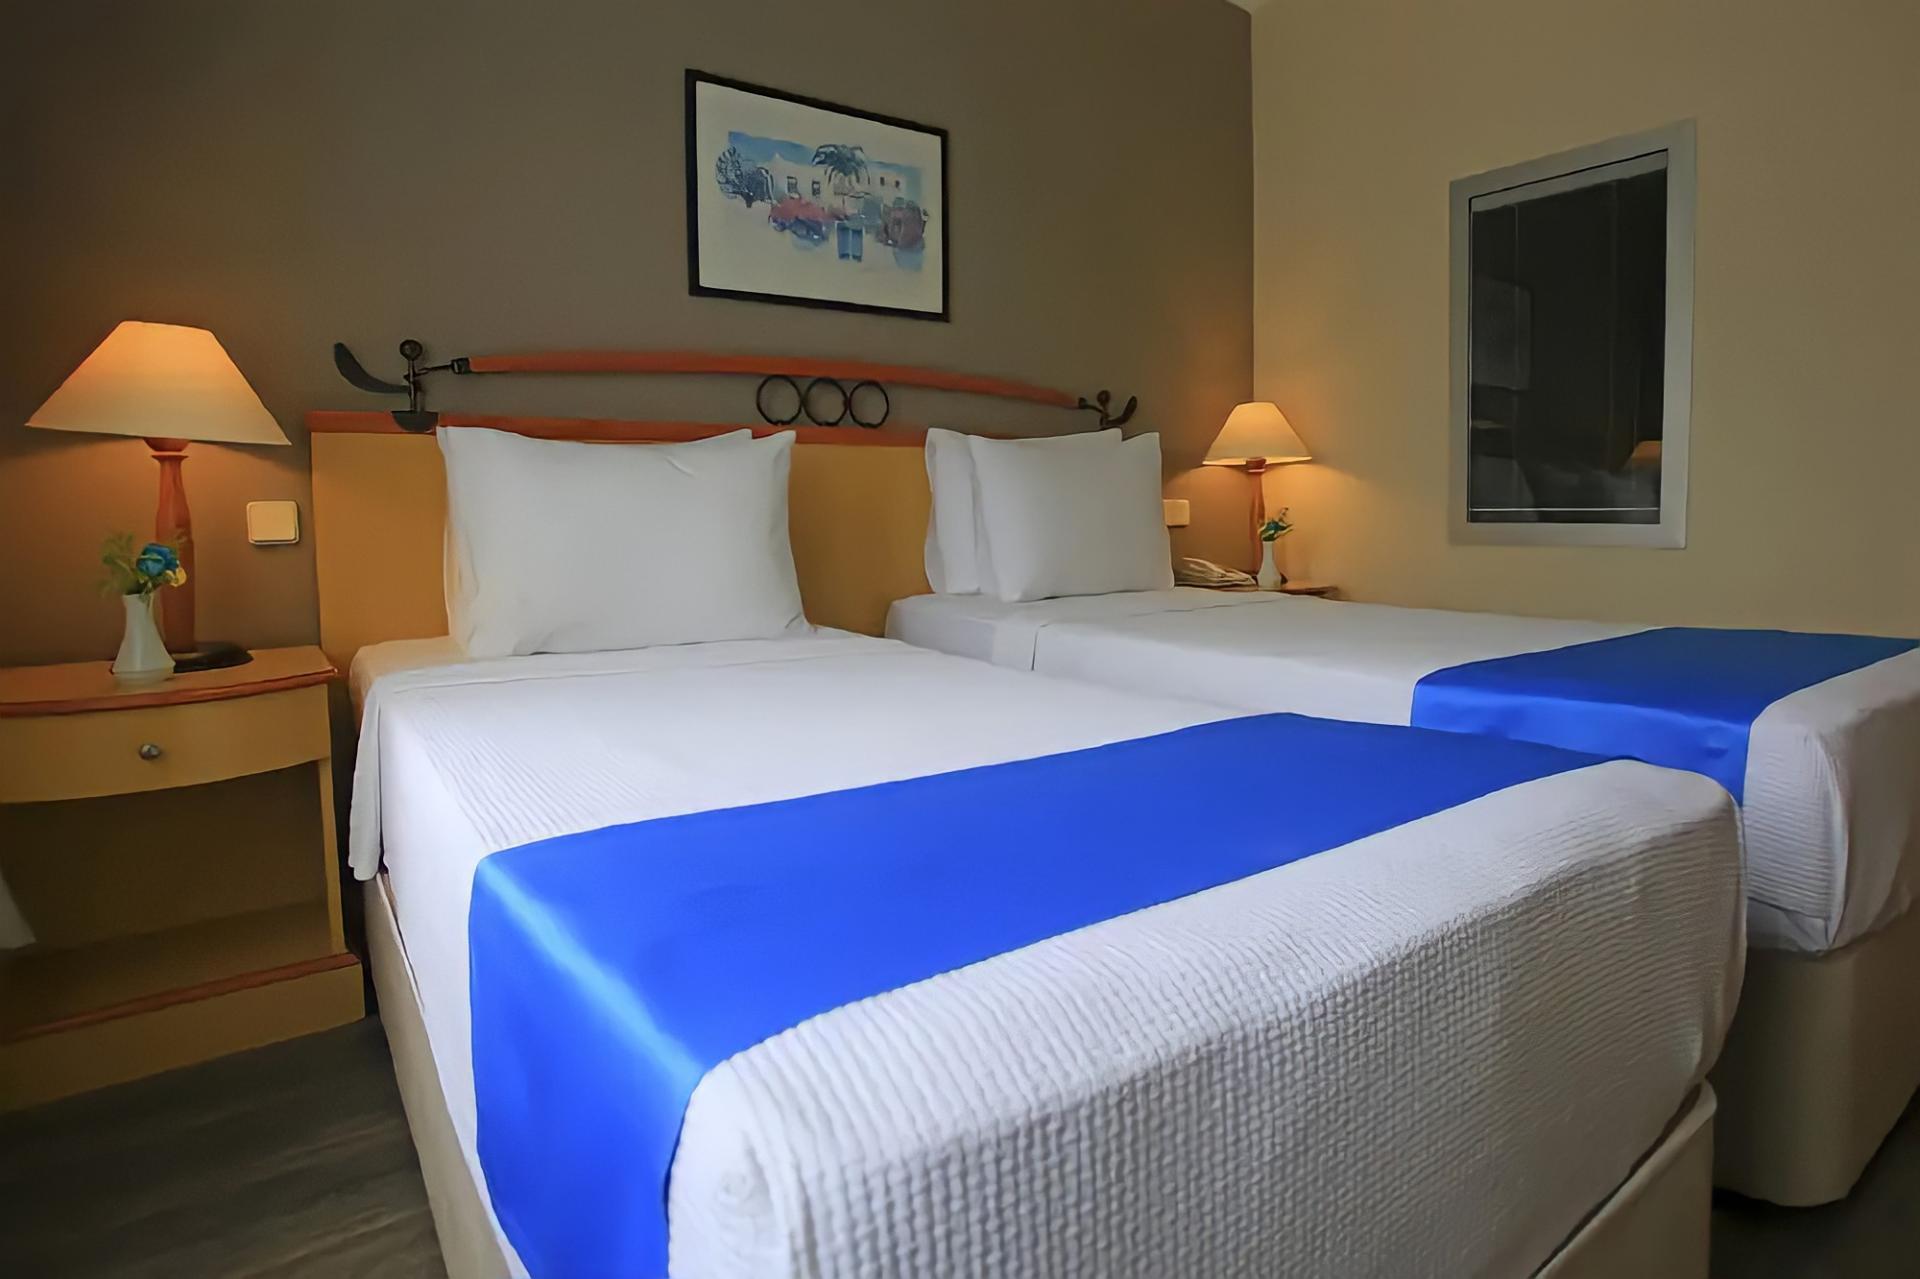 Hotel Roseira Beach Resort - Turcja